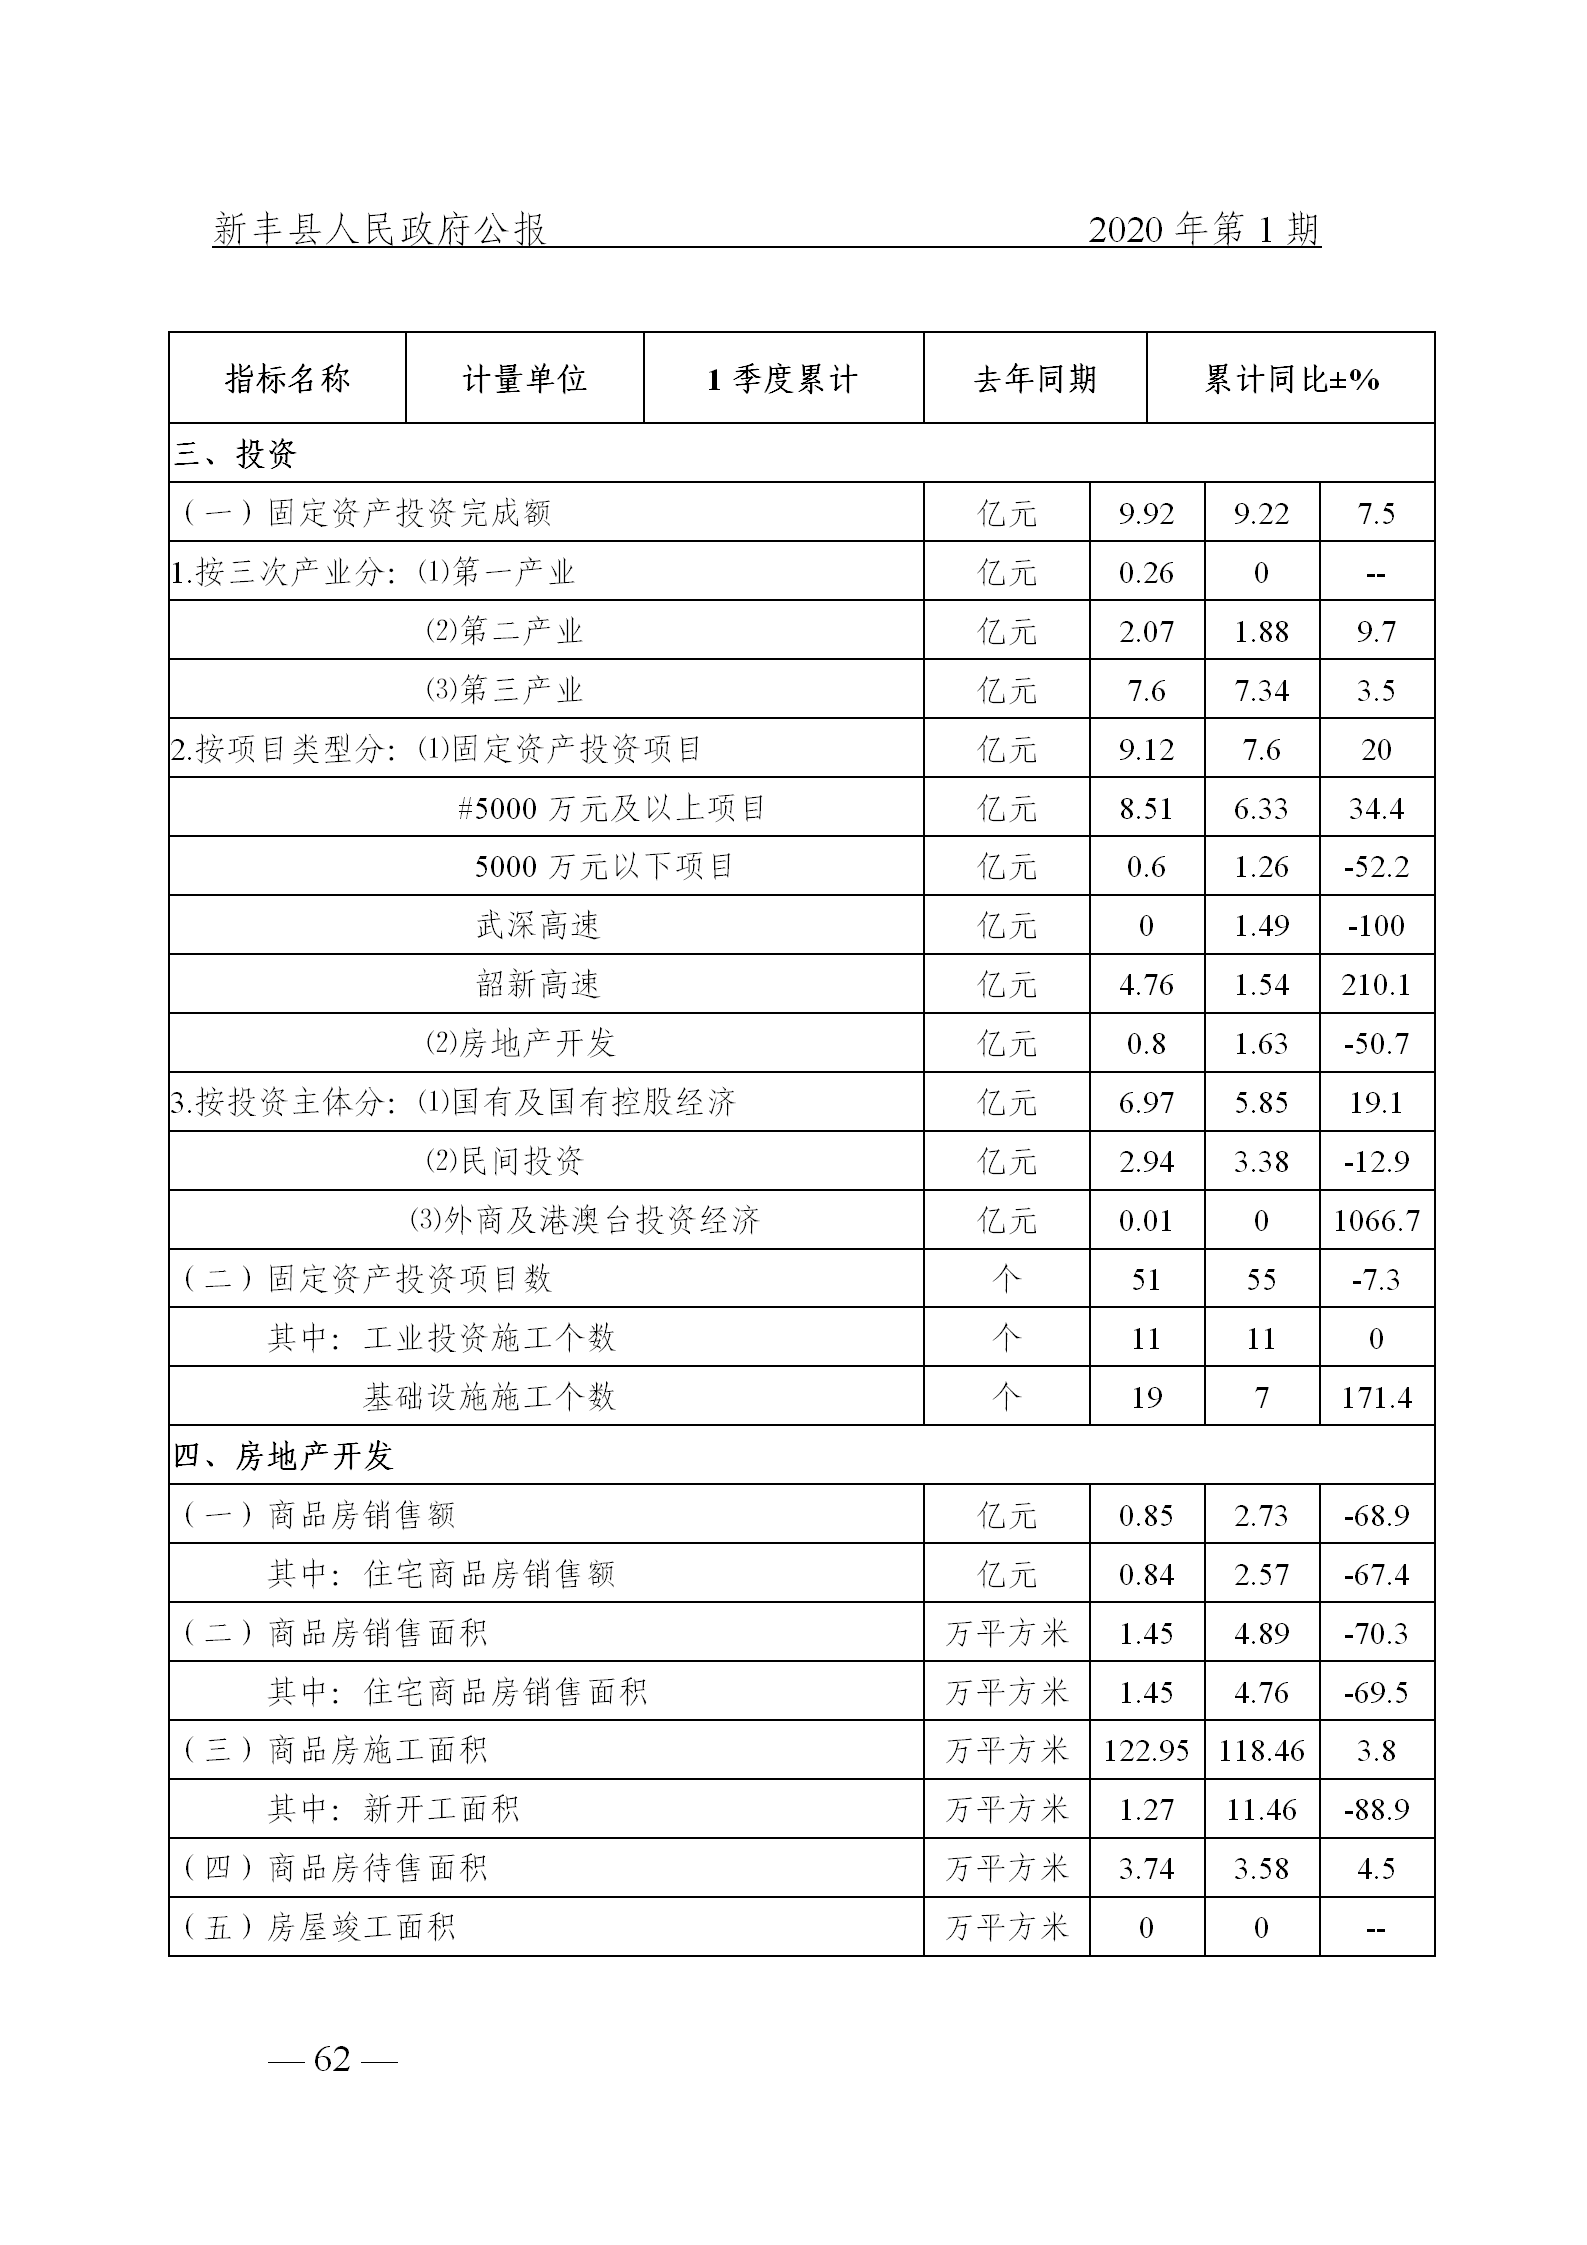 《新丰县人民政府公报》2020年第1期(1)_62.png